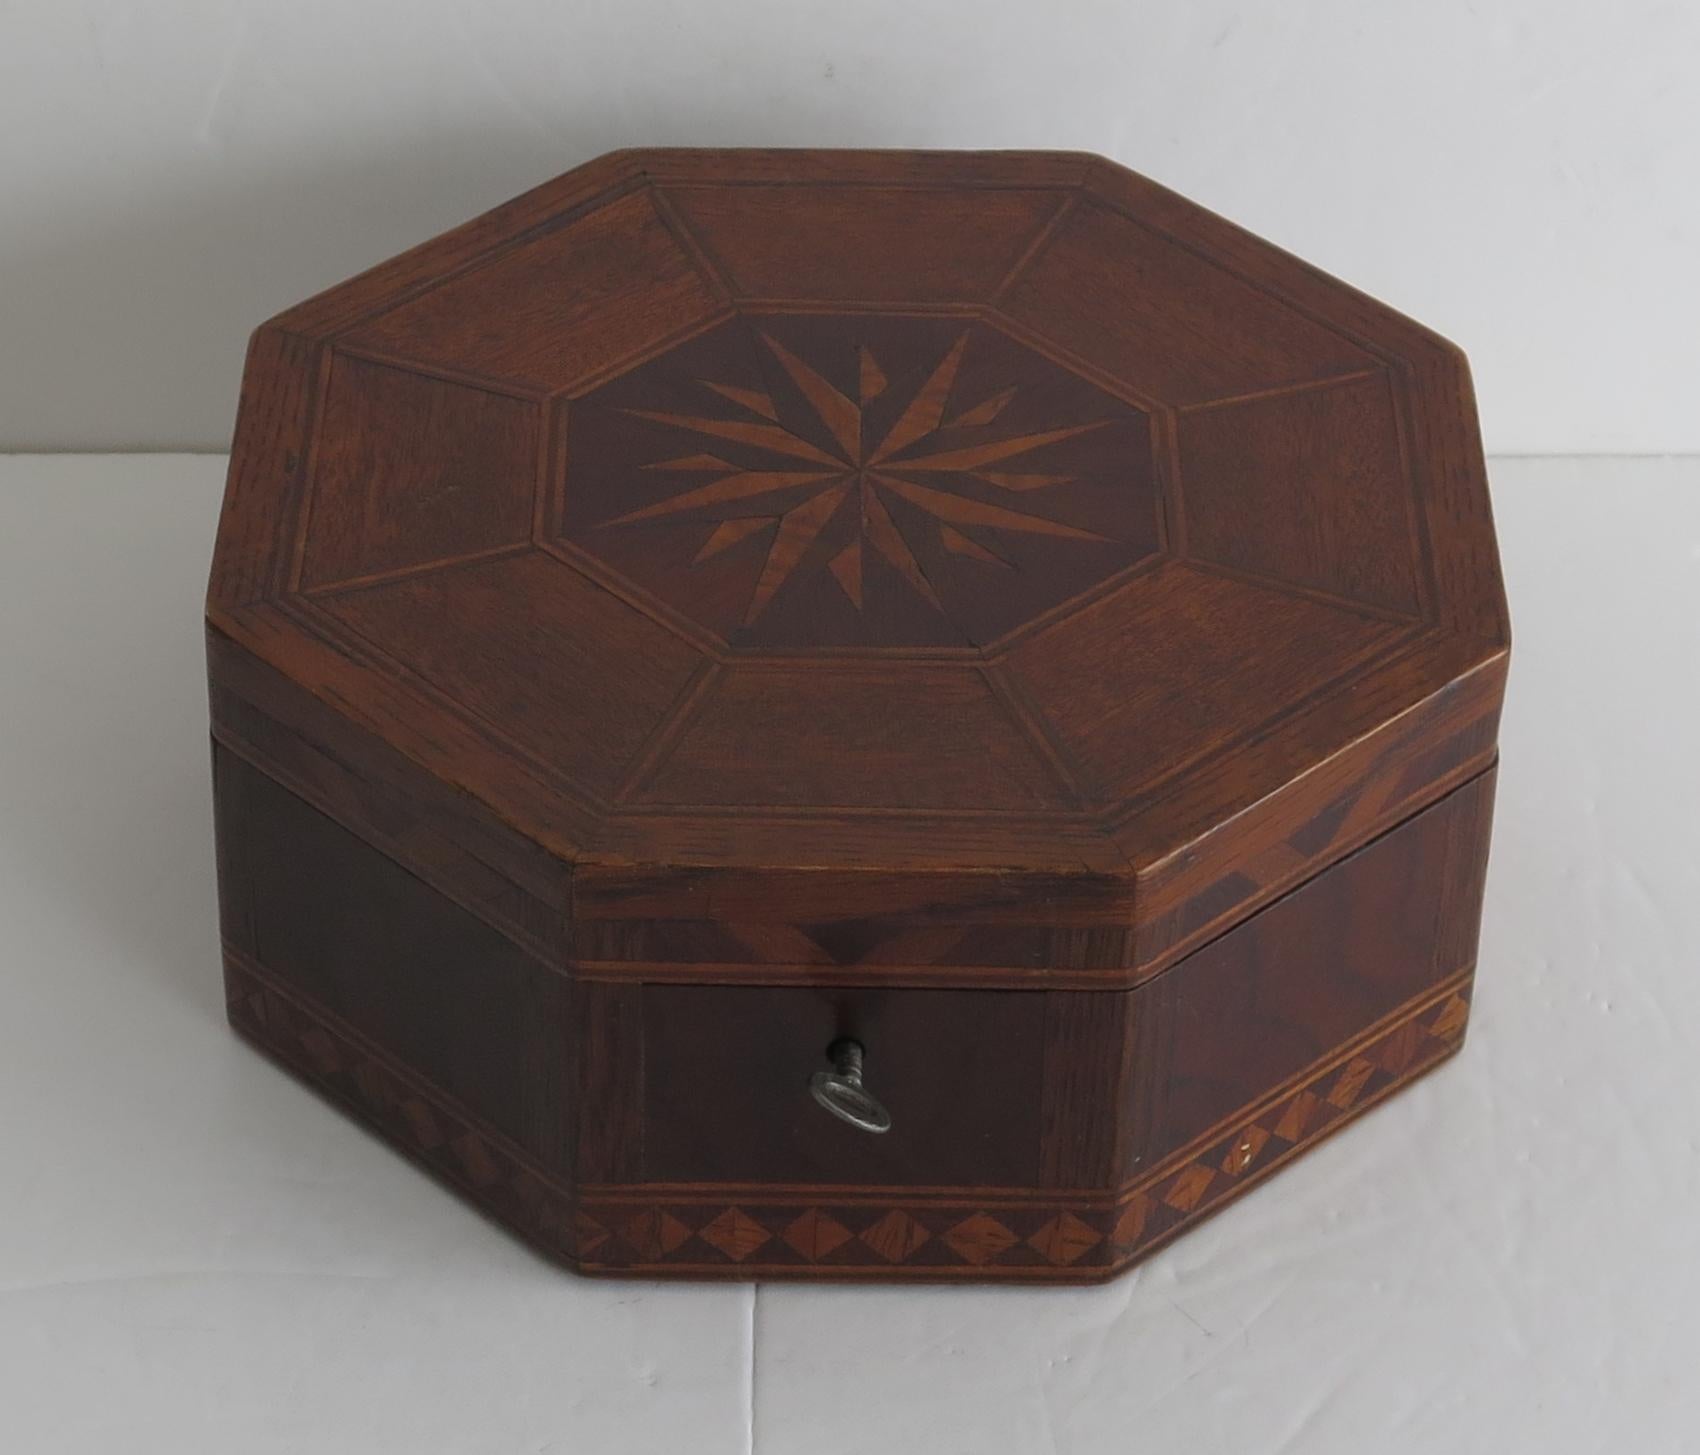 Dies ist eine wunderschön handgefertigte Eiche Sewing Box, der achteckigen Form mit eingelegten Sonnenschliff oben, voll ausgestattet innen und mit einem funktionierenden Schloss und Schlüssel, die alle aus ca. 1840.

Der Kasten hat eine achteckige